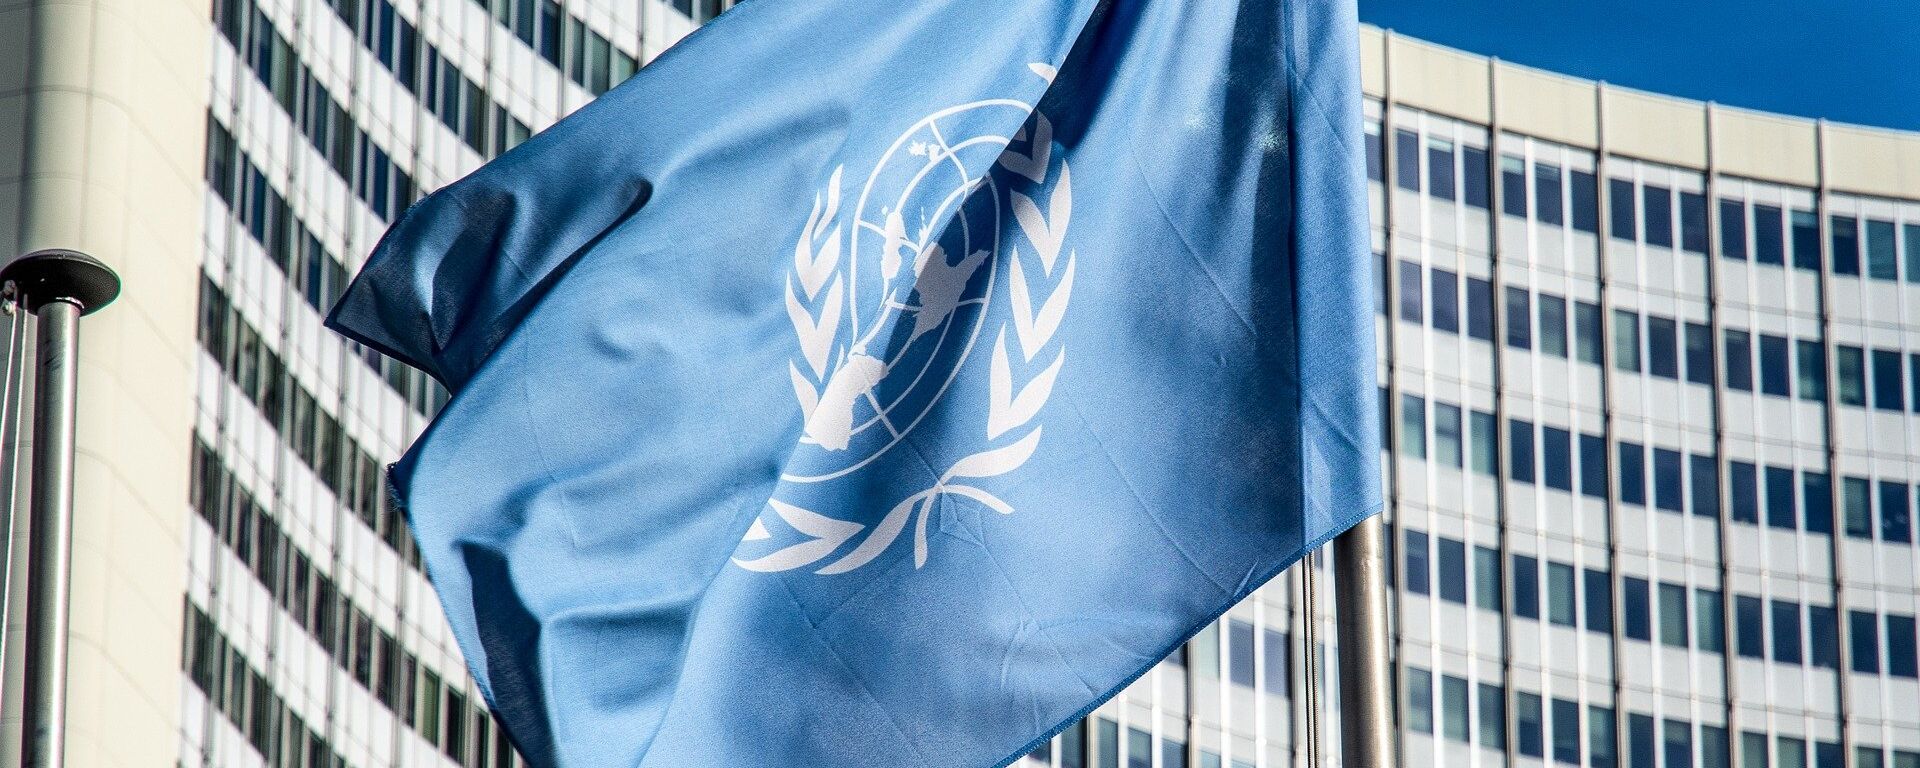 La bandera de la ONU - Sputnik Mundo, 1920, 12.11.2021